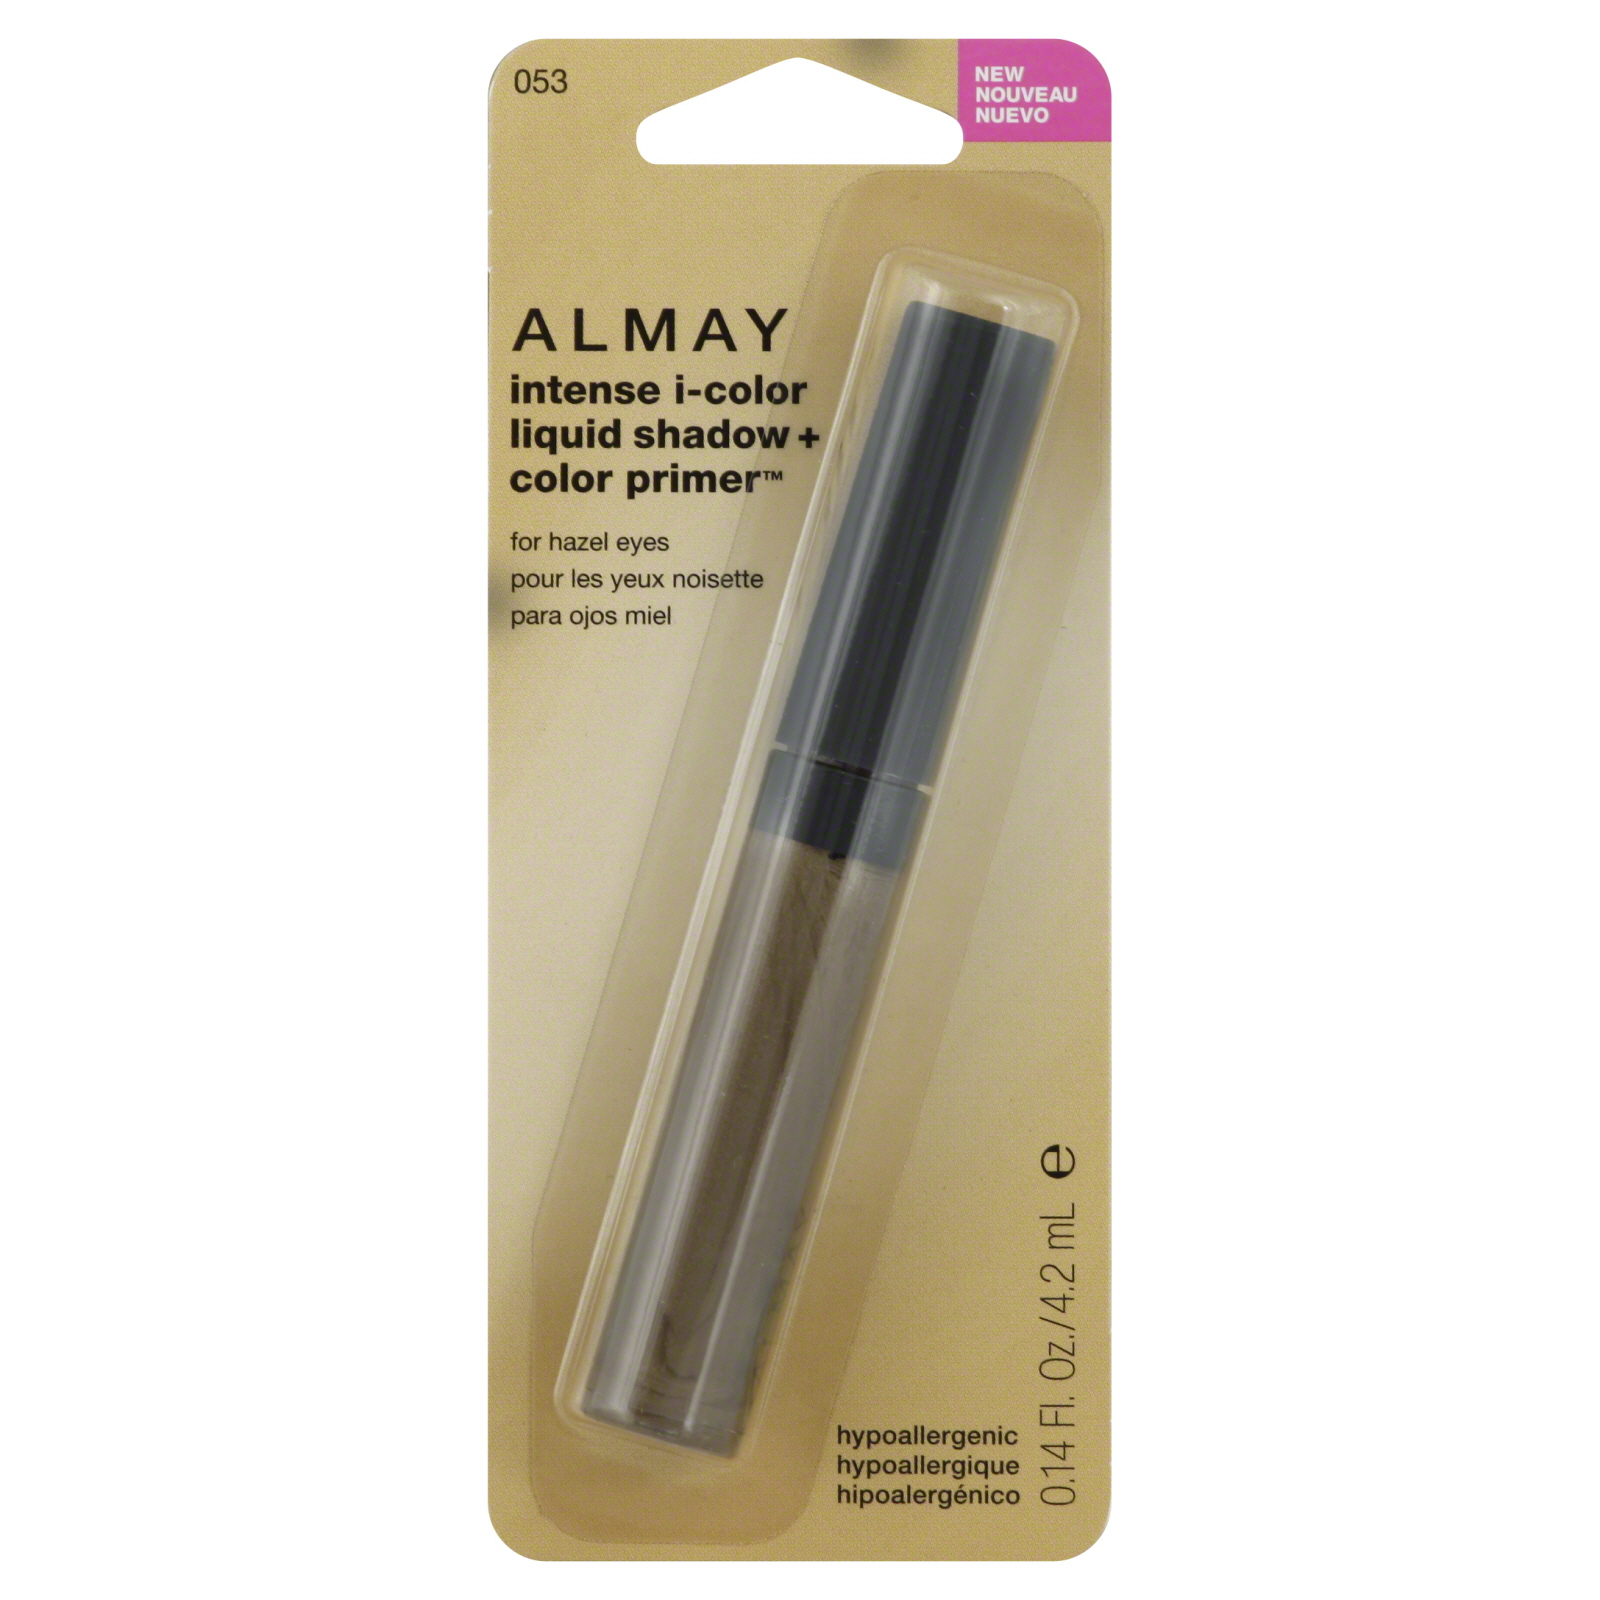 Almay Intense I-Color Liquid Eyeshadow + Clear Primer For Hazel Eyes, 0.14 fl oz